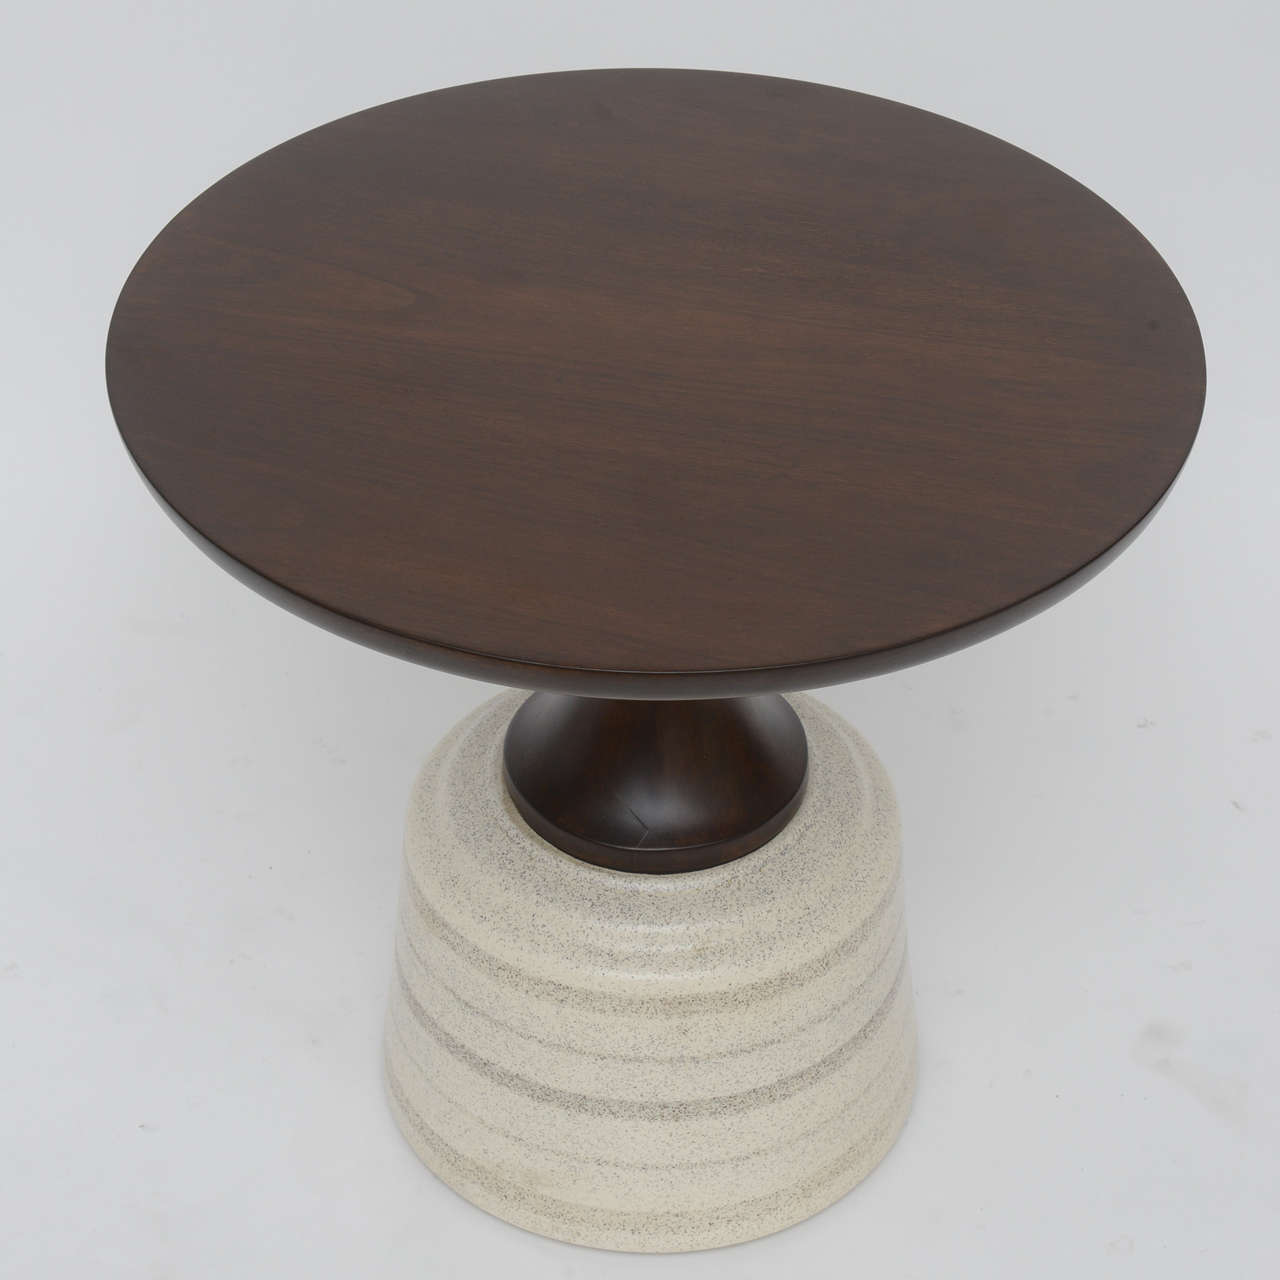 Ceramic-Based Walnut Side Table by John Van Koert for Drexel 2